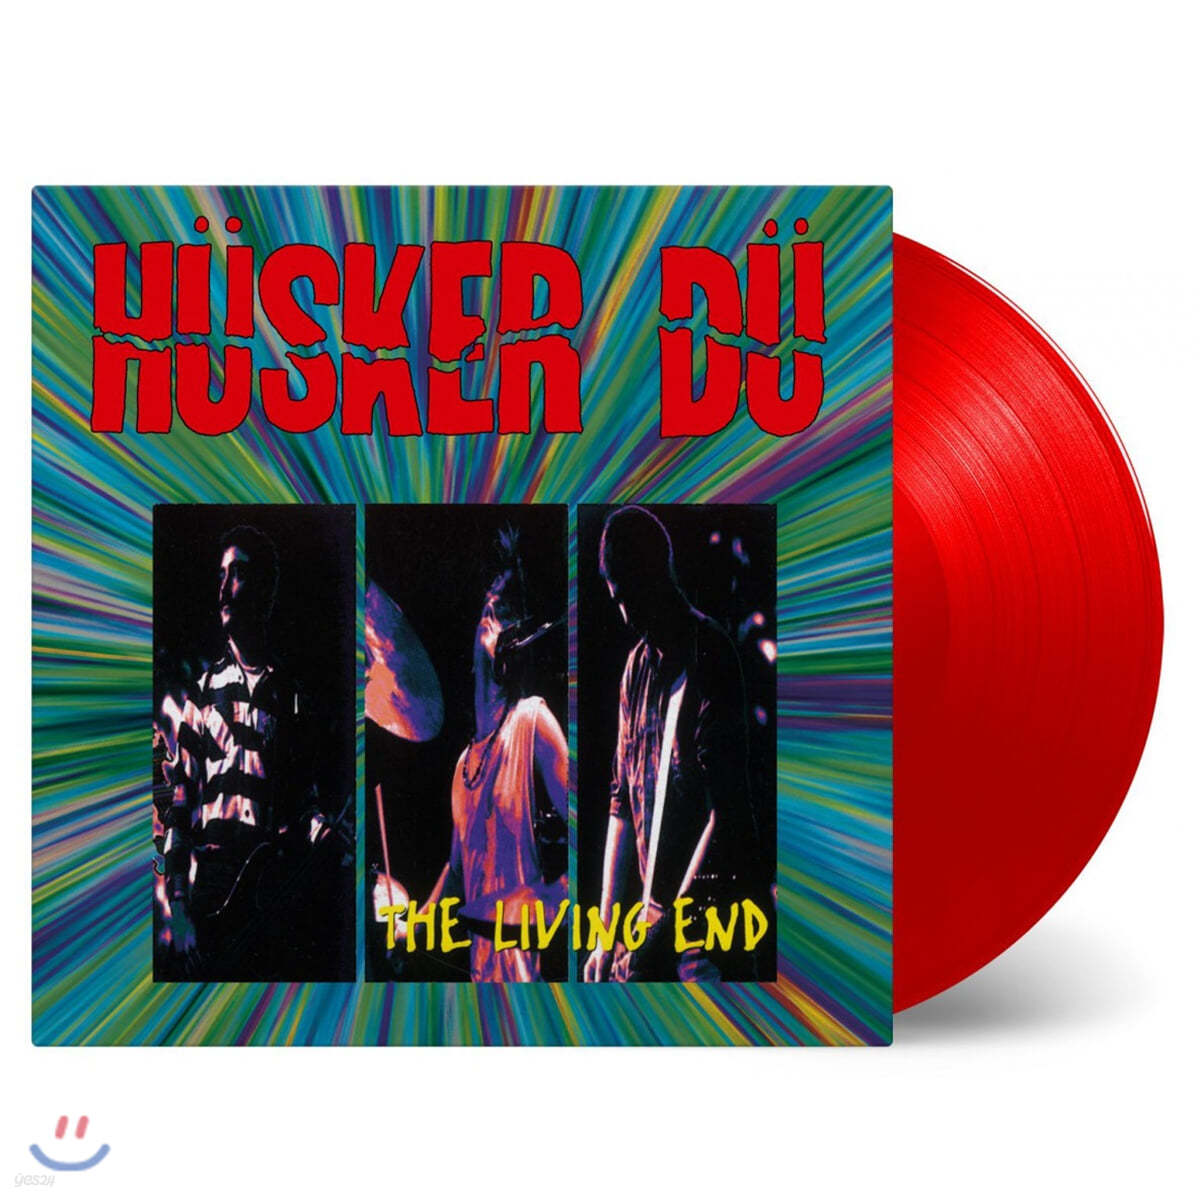 Husker Du (허스커 두) - The Living End 허스커 두 라이브 앨범 [레드 컬러 2LP]